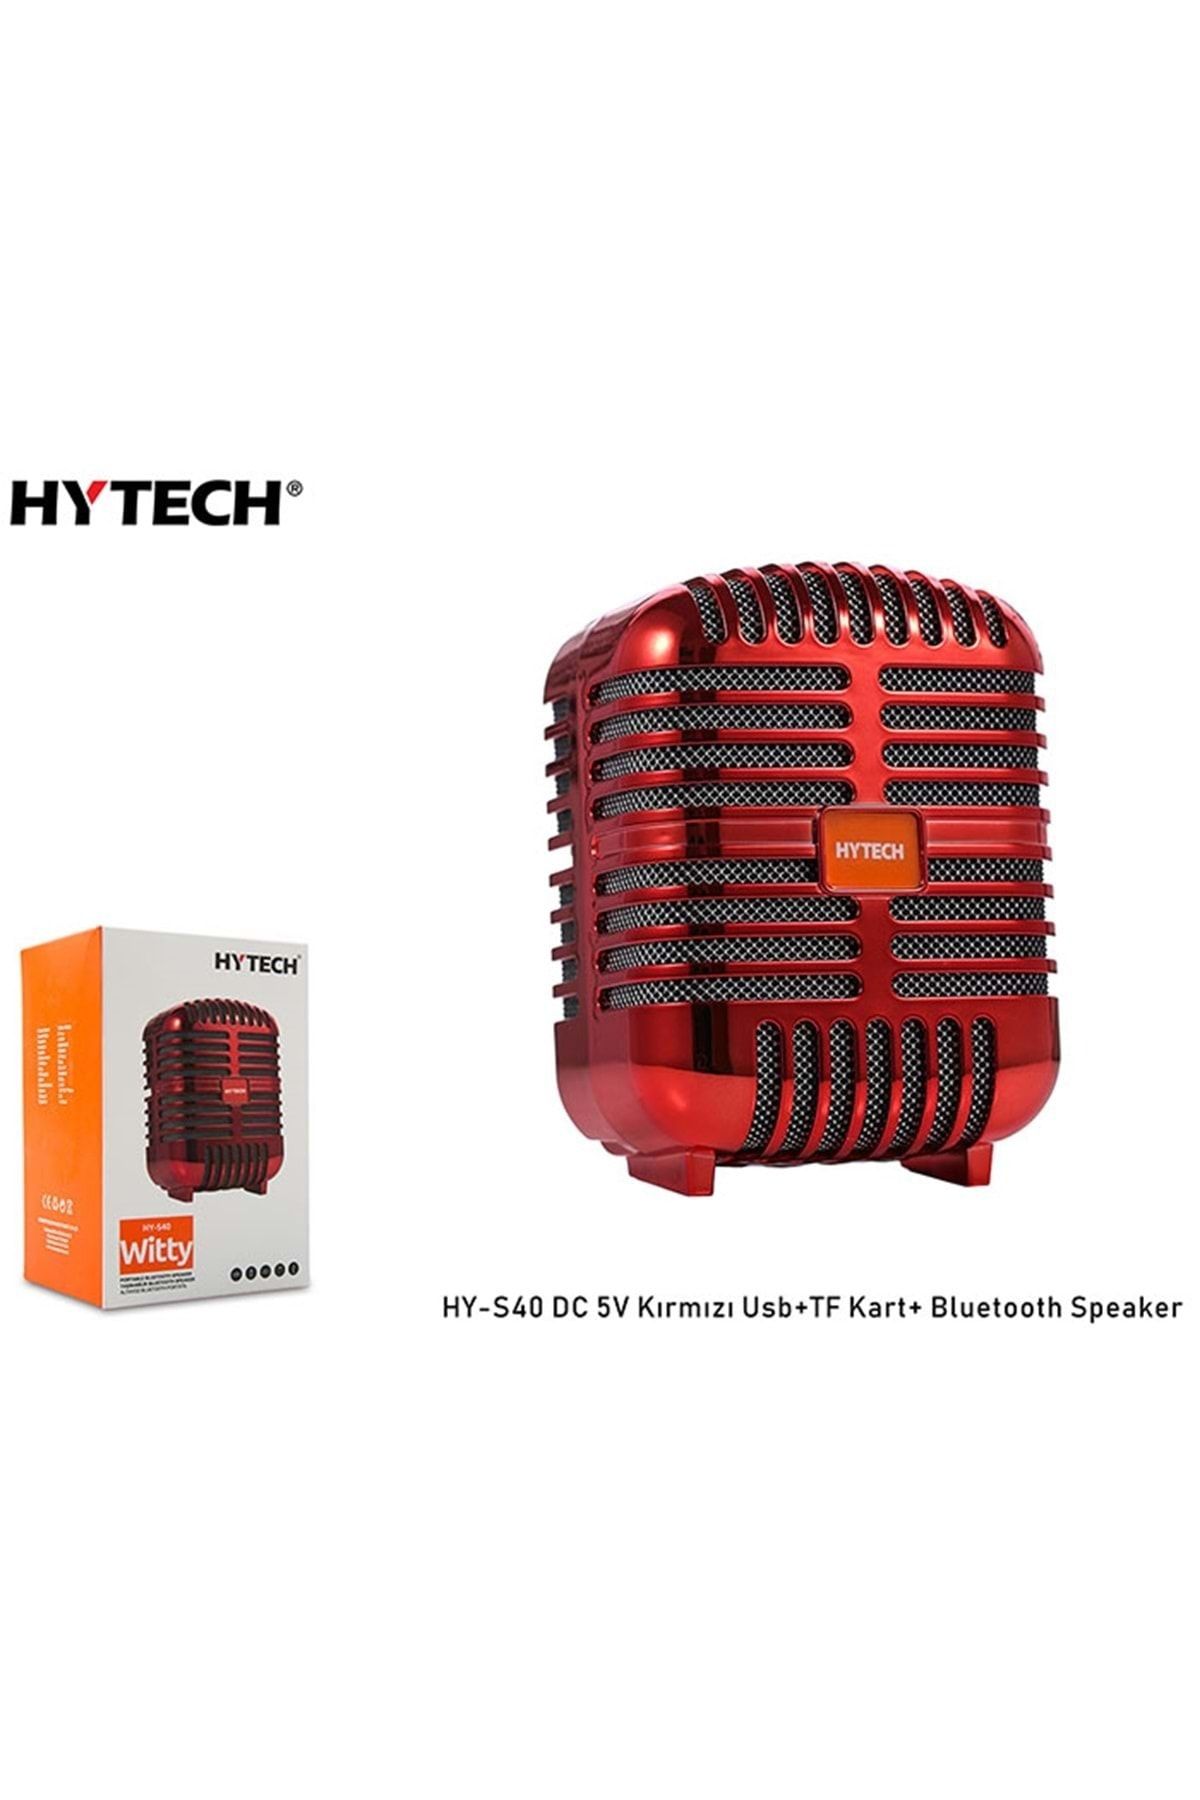 Hytech Hy-s40 Dc 5v Bluetooth Speaker Kırmızı Usb+tf Kart